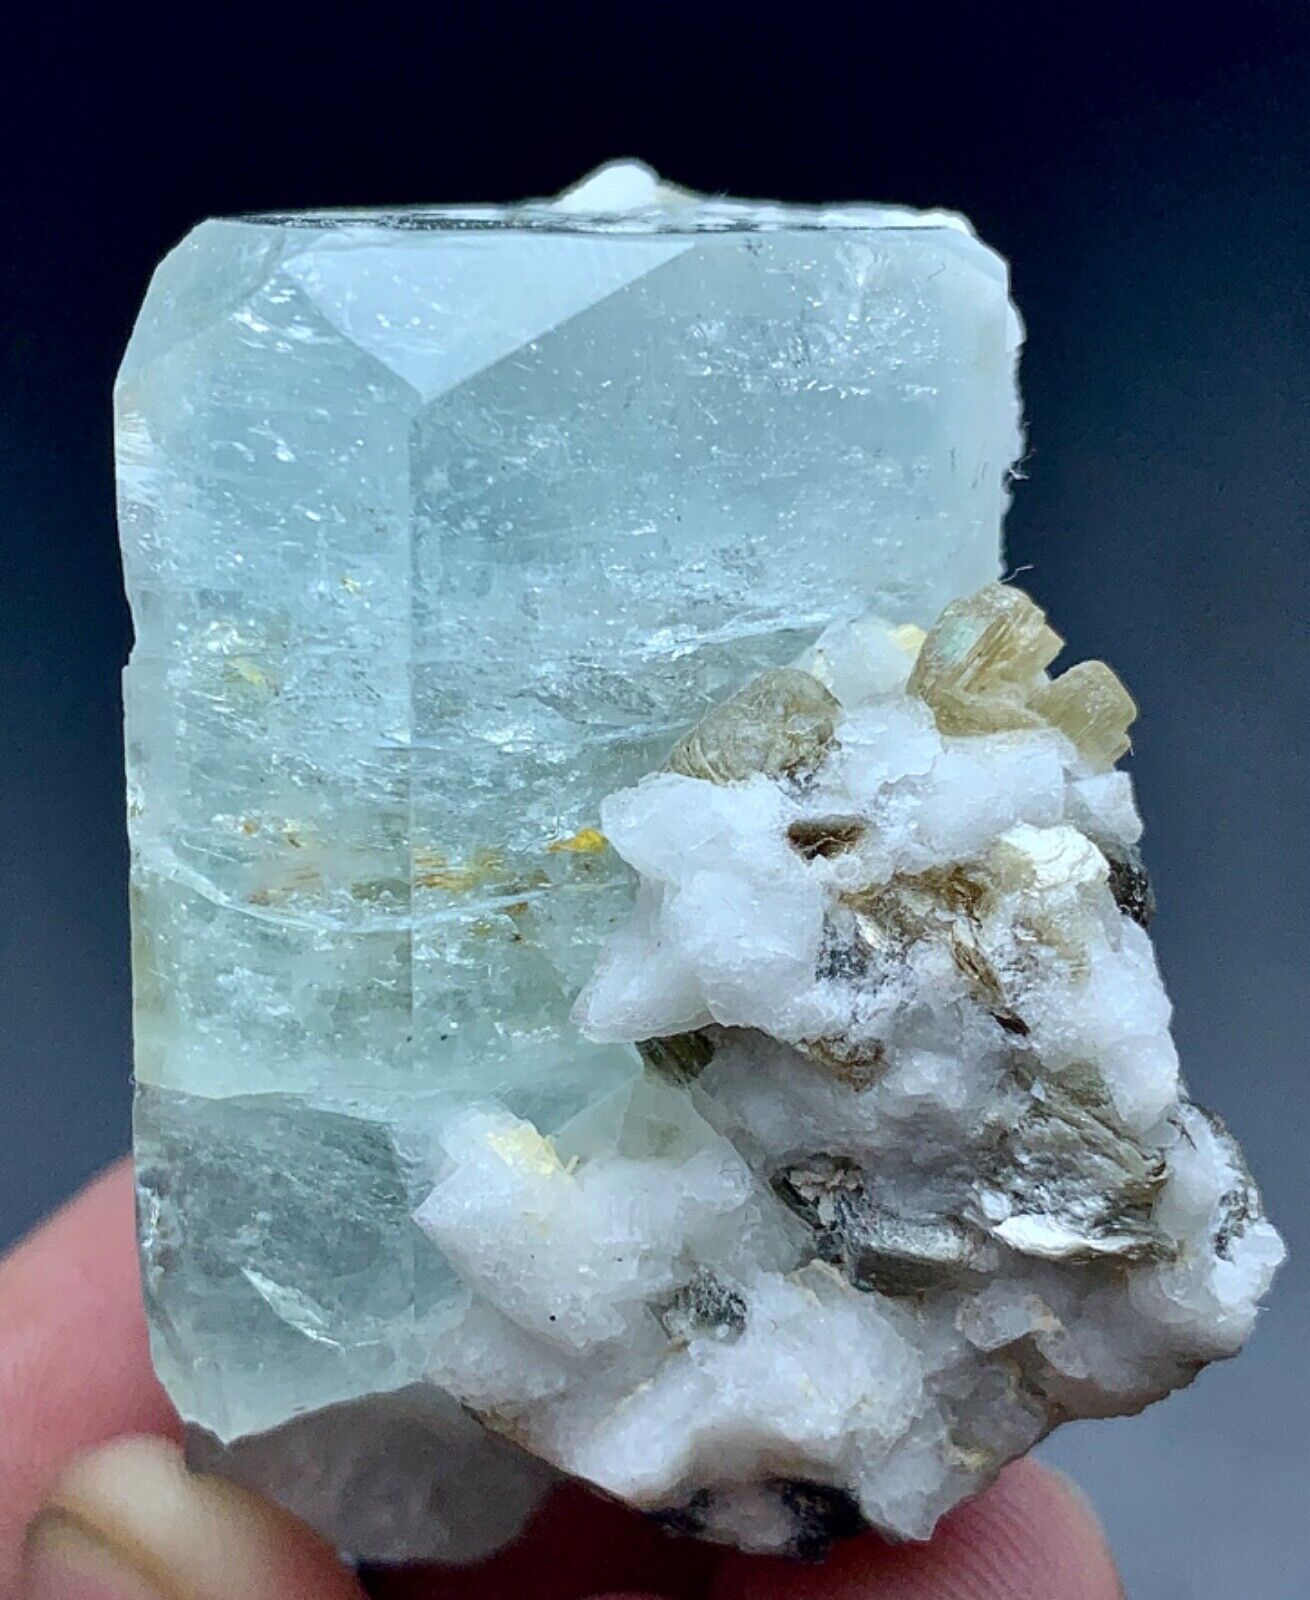 340 Carat Aquamarine Crystal With Mica and Feldspar Specimen